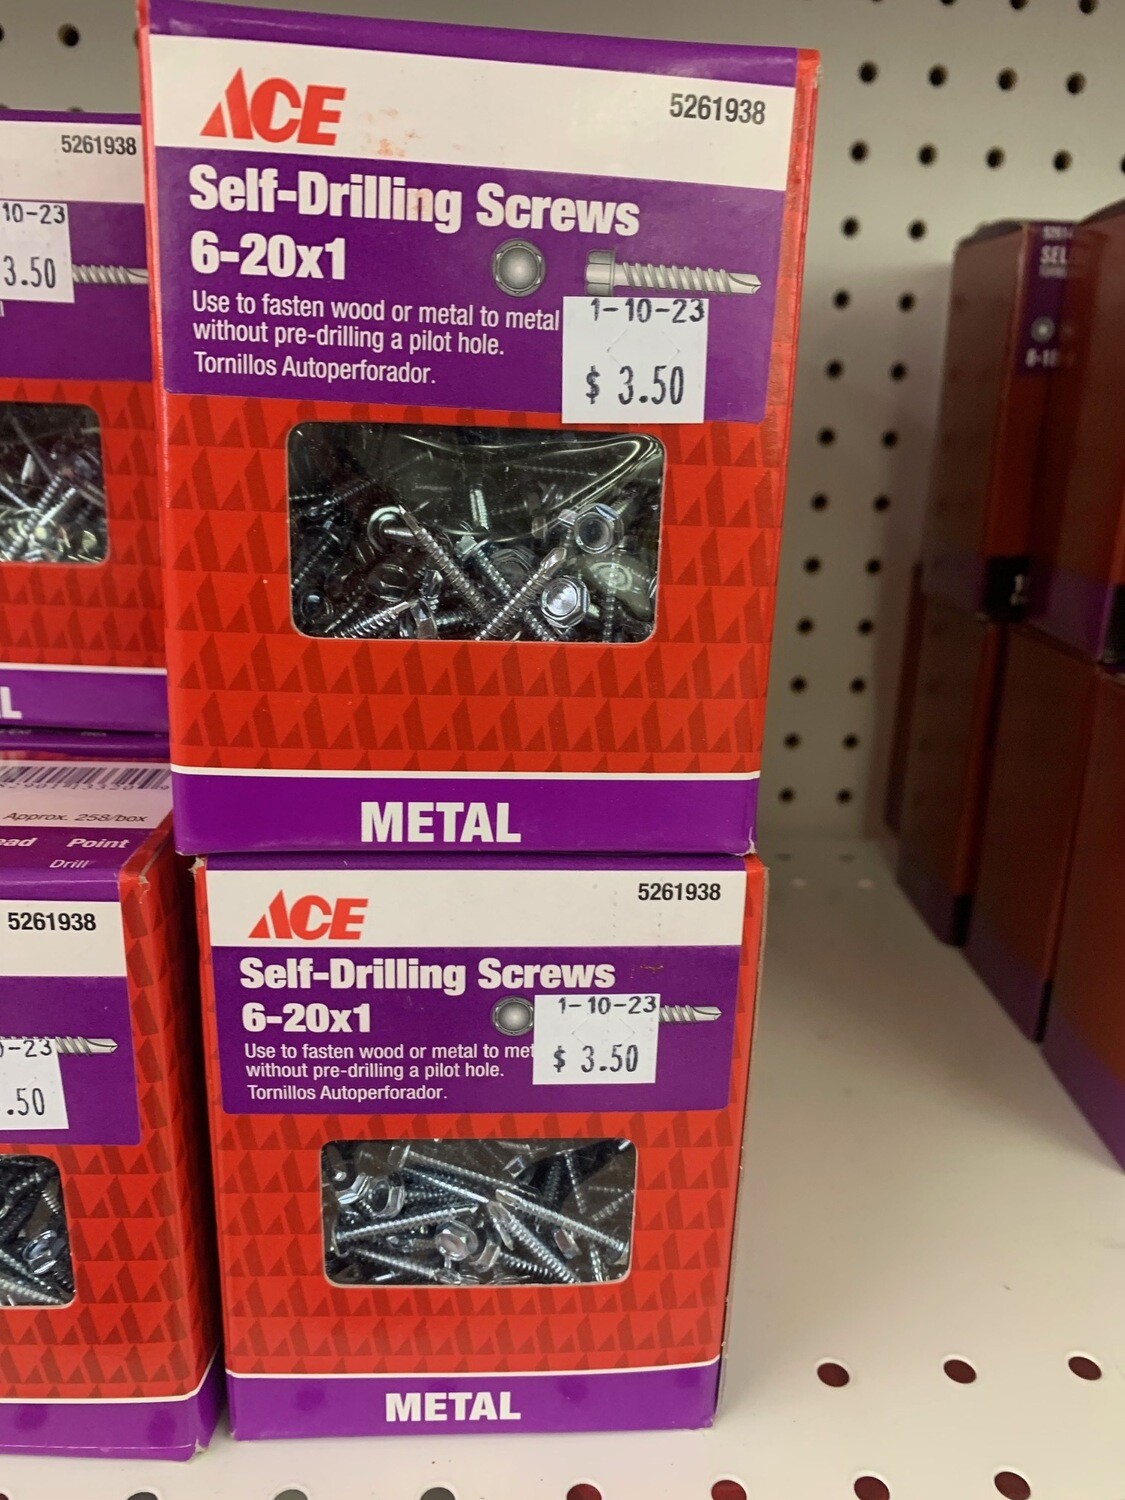 Metal Self-Drilling Screws 6-20x1